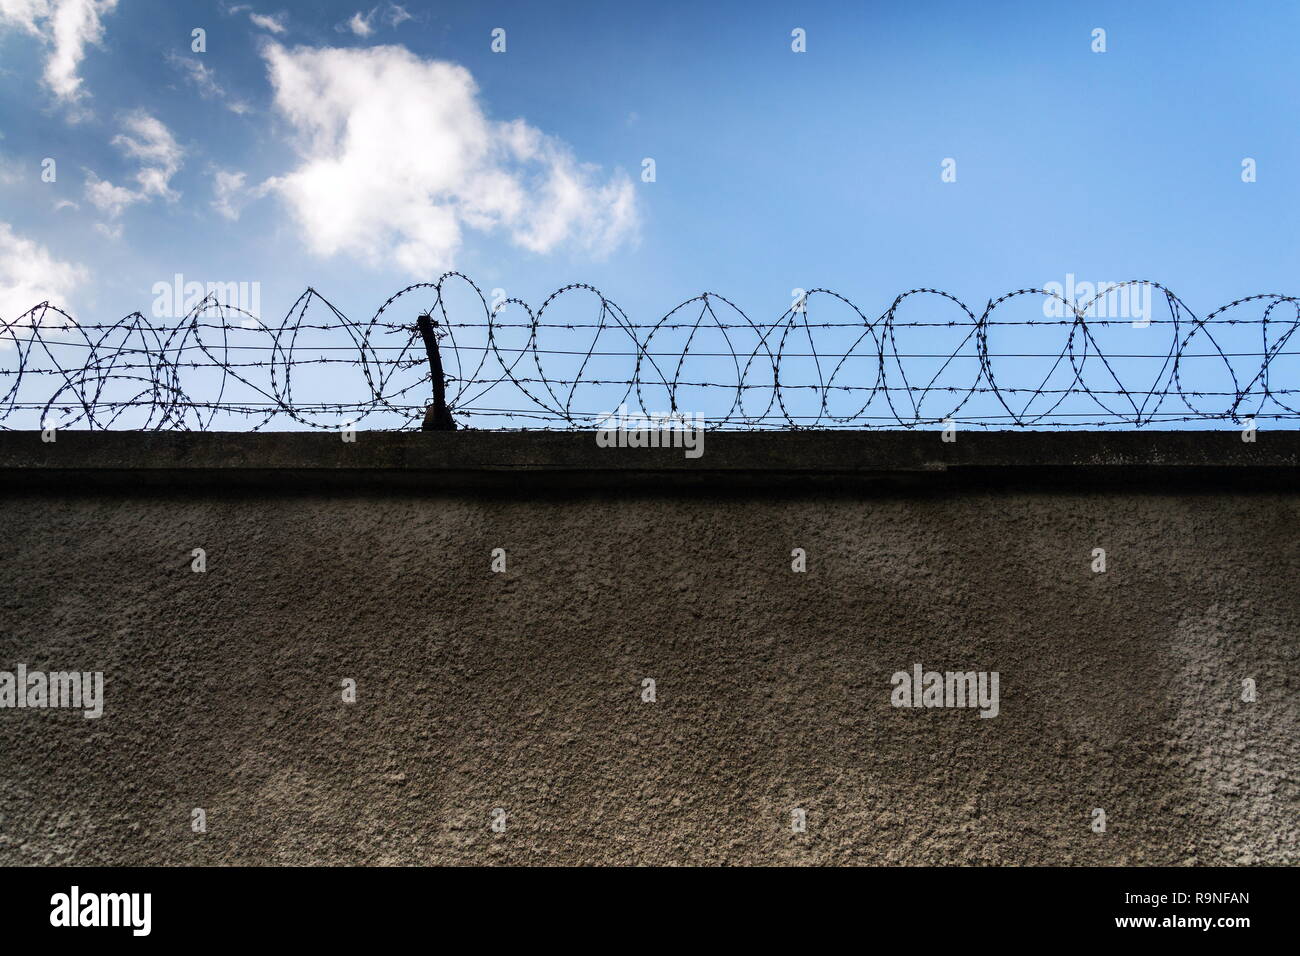 Valla de alambre de espino alrededor de los muros de la cárcel, azul cielo nublado en el fondo, la seguridad, la delincuencia o la inmigración ilegal, concepto Foto de stock